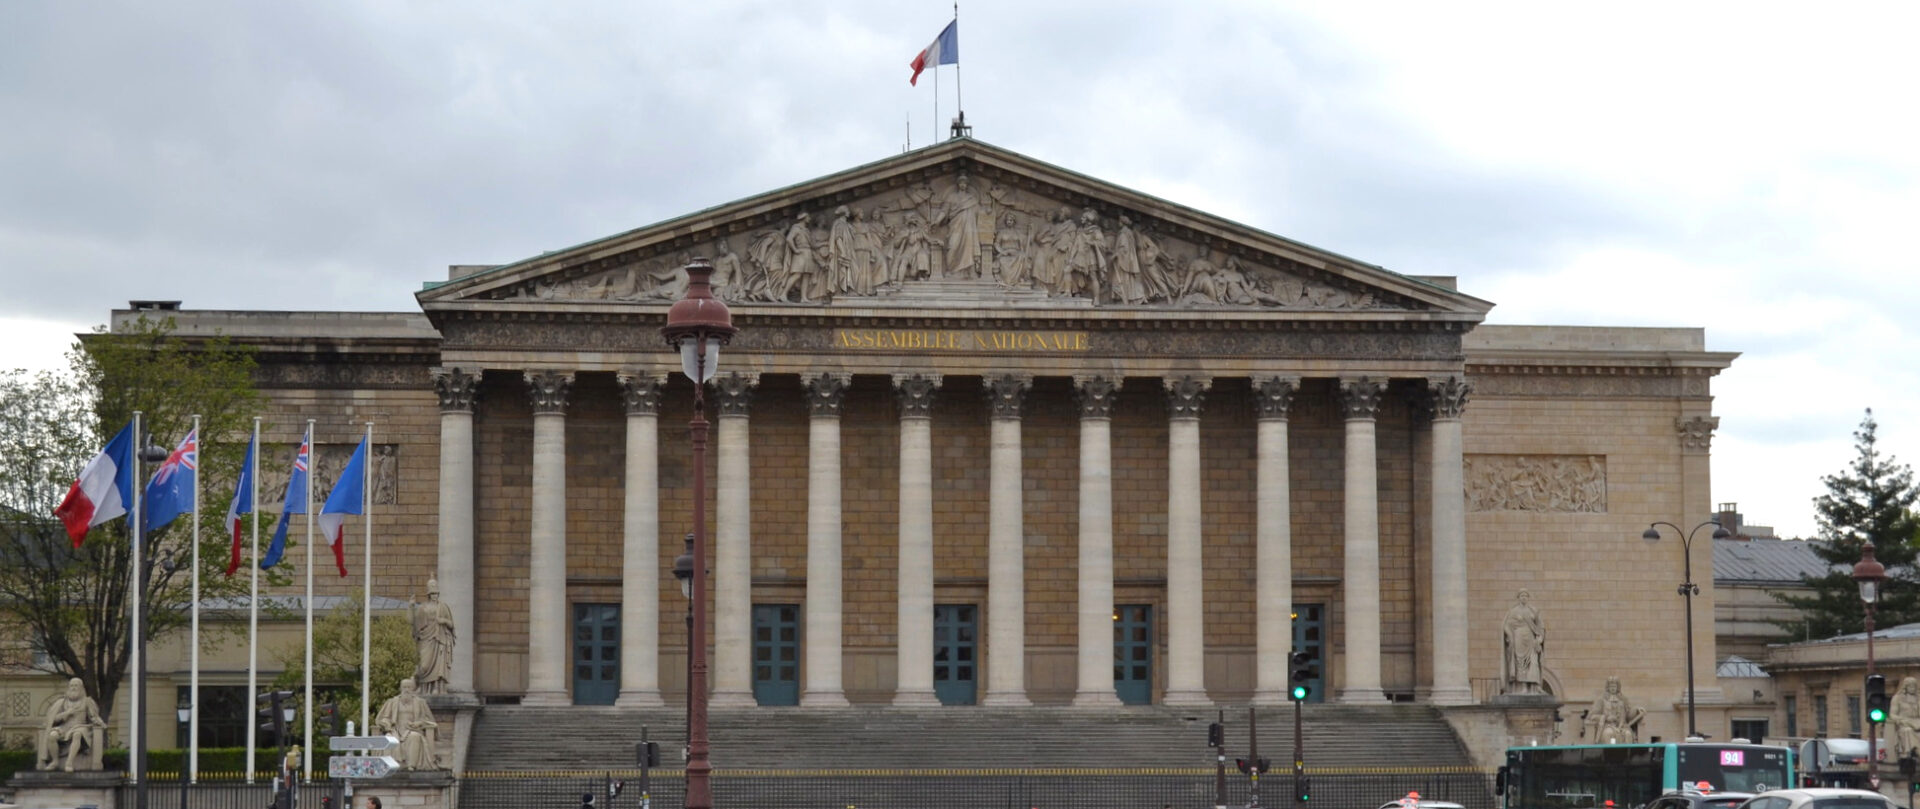 Le projet d'inscription de l'IVG dans la Constitution a été voté à l'Assemblée nationale française | © Ethan Gruber/Flickr/CC BY-SA 2.0